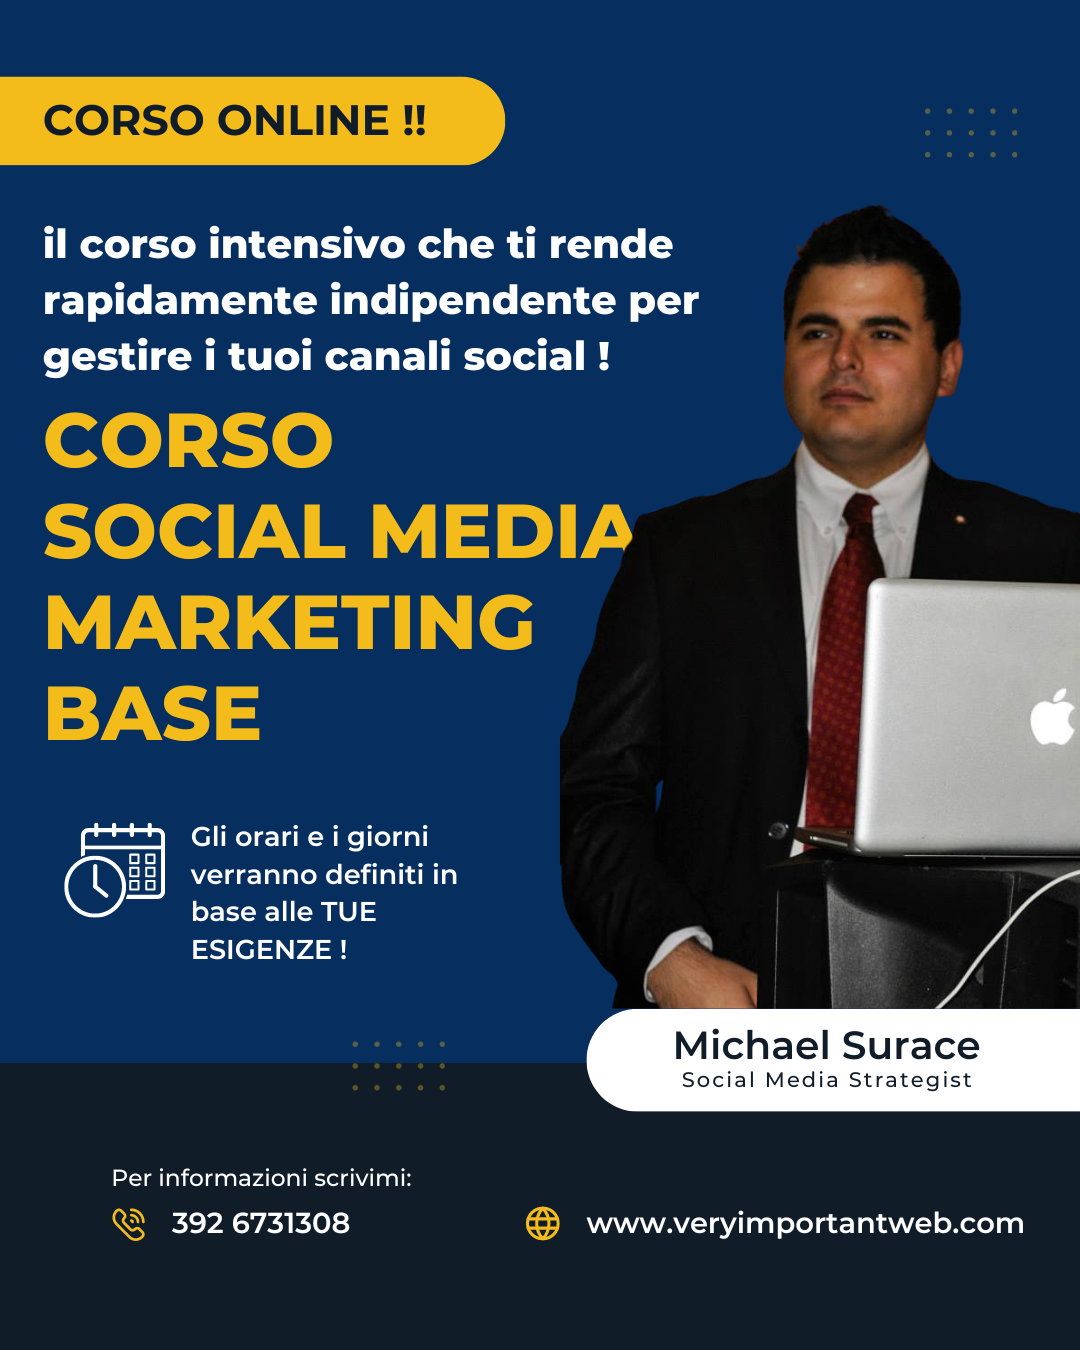 Corso online social media marketing